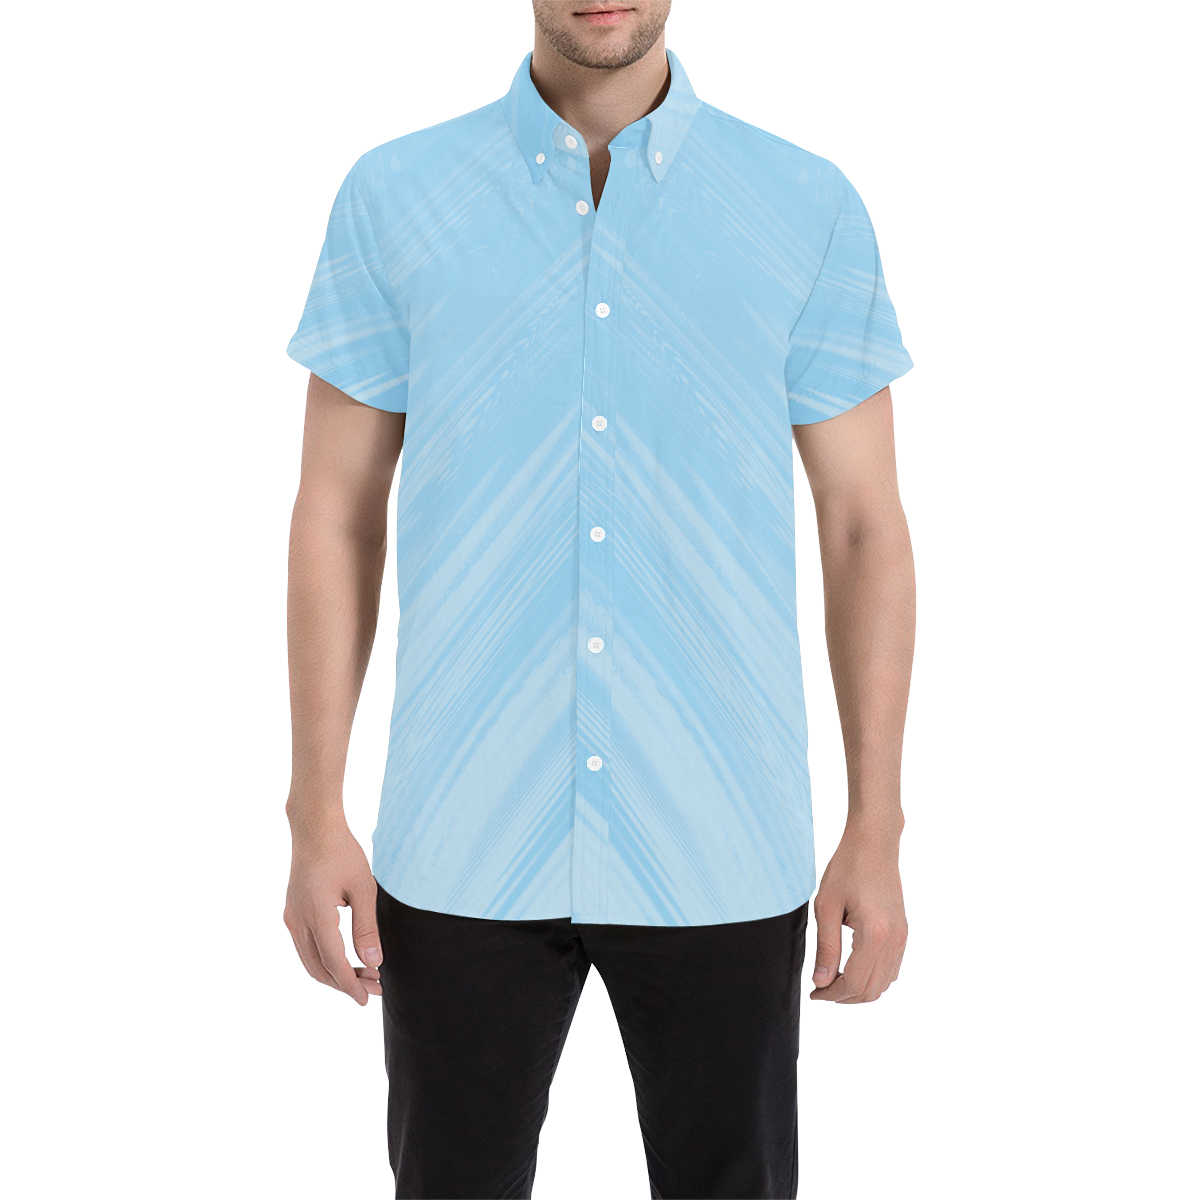 Hilbert Grid Men's All Over Print Short Sleeve Shirt (Model T53)